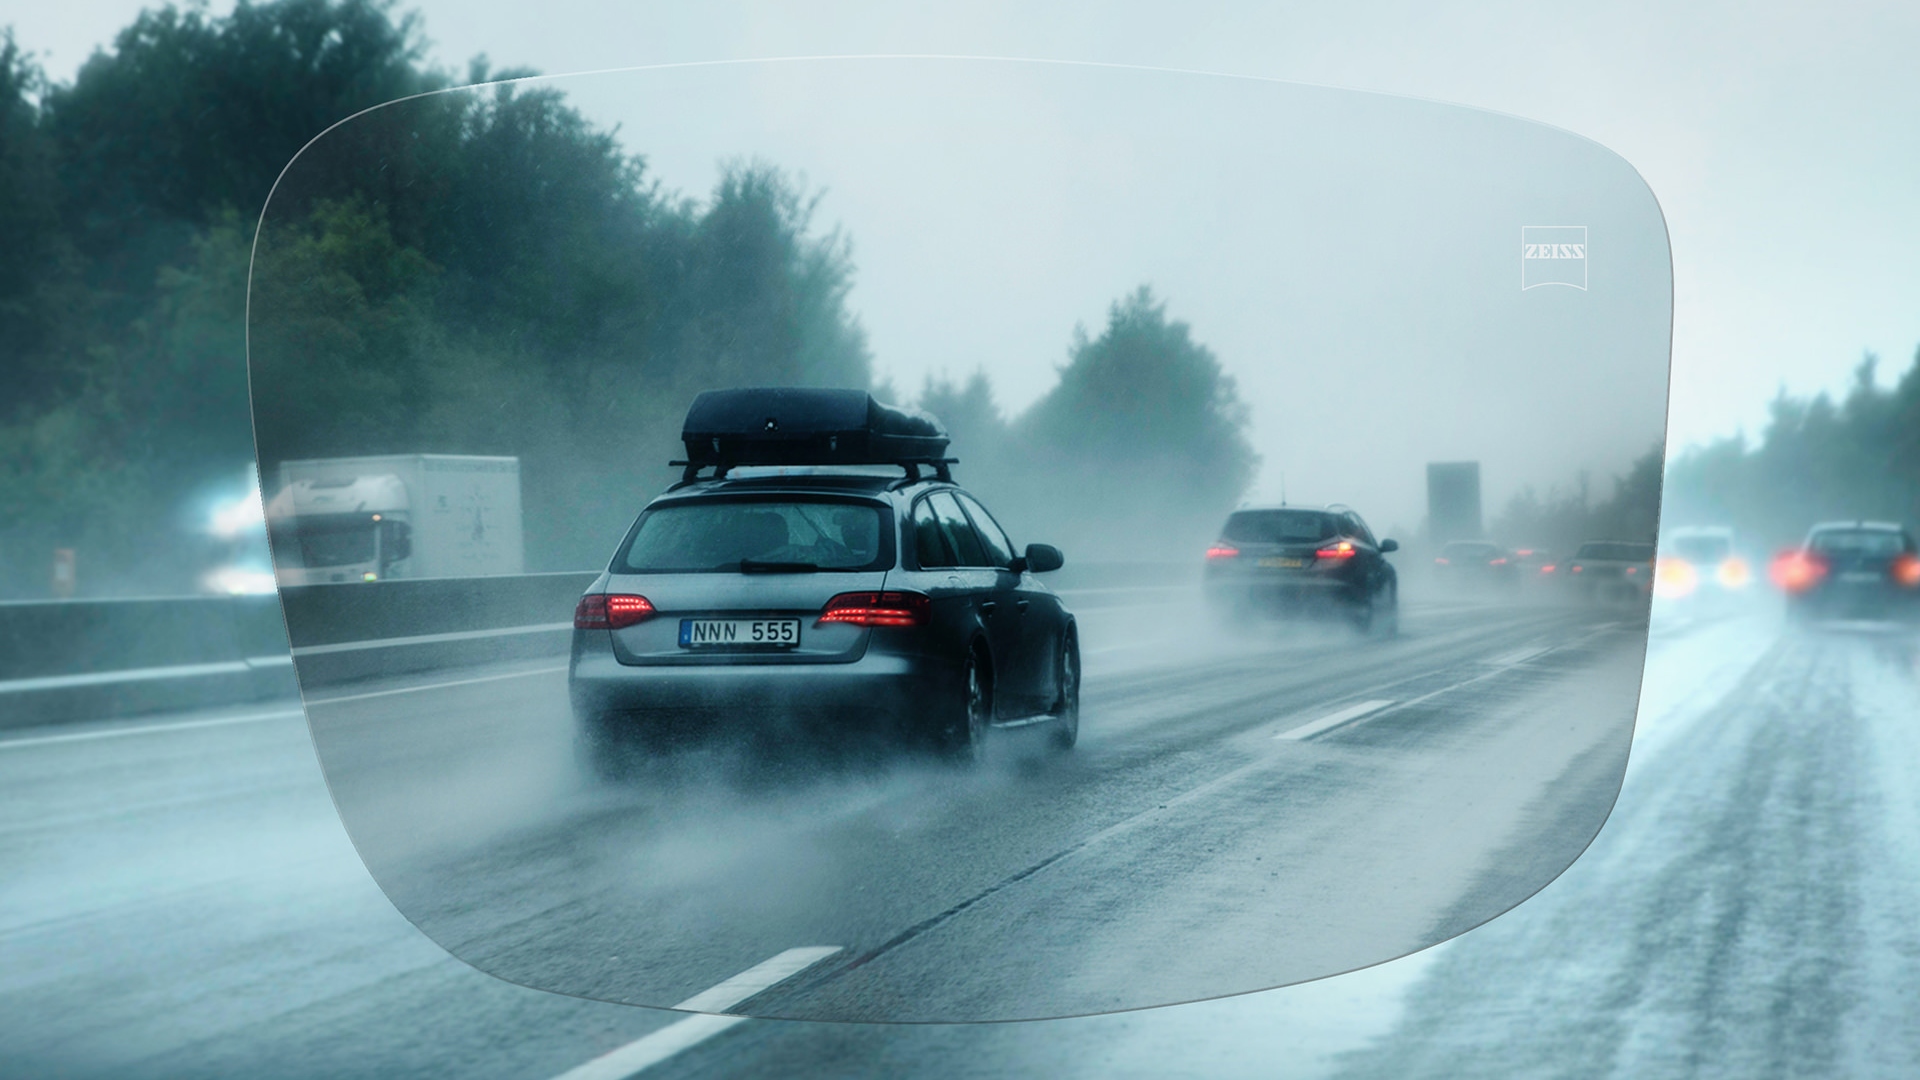 Visning af en regnfuld dag på en motorvej set gennem ZEISS DriveSafe enkeltstyrkeglas 